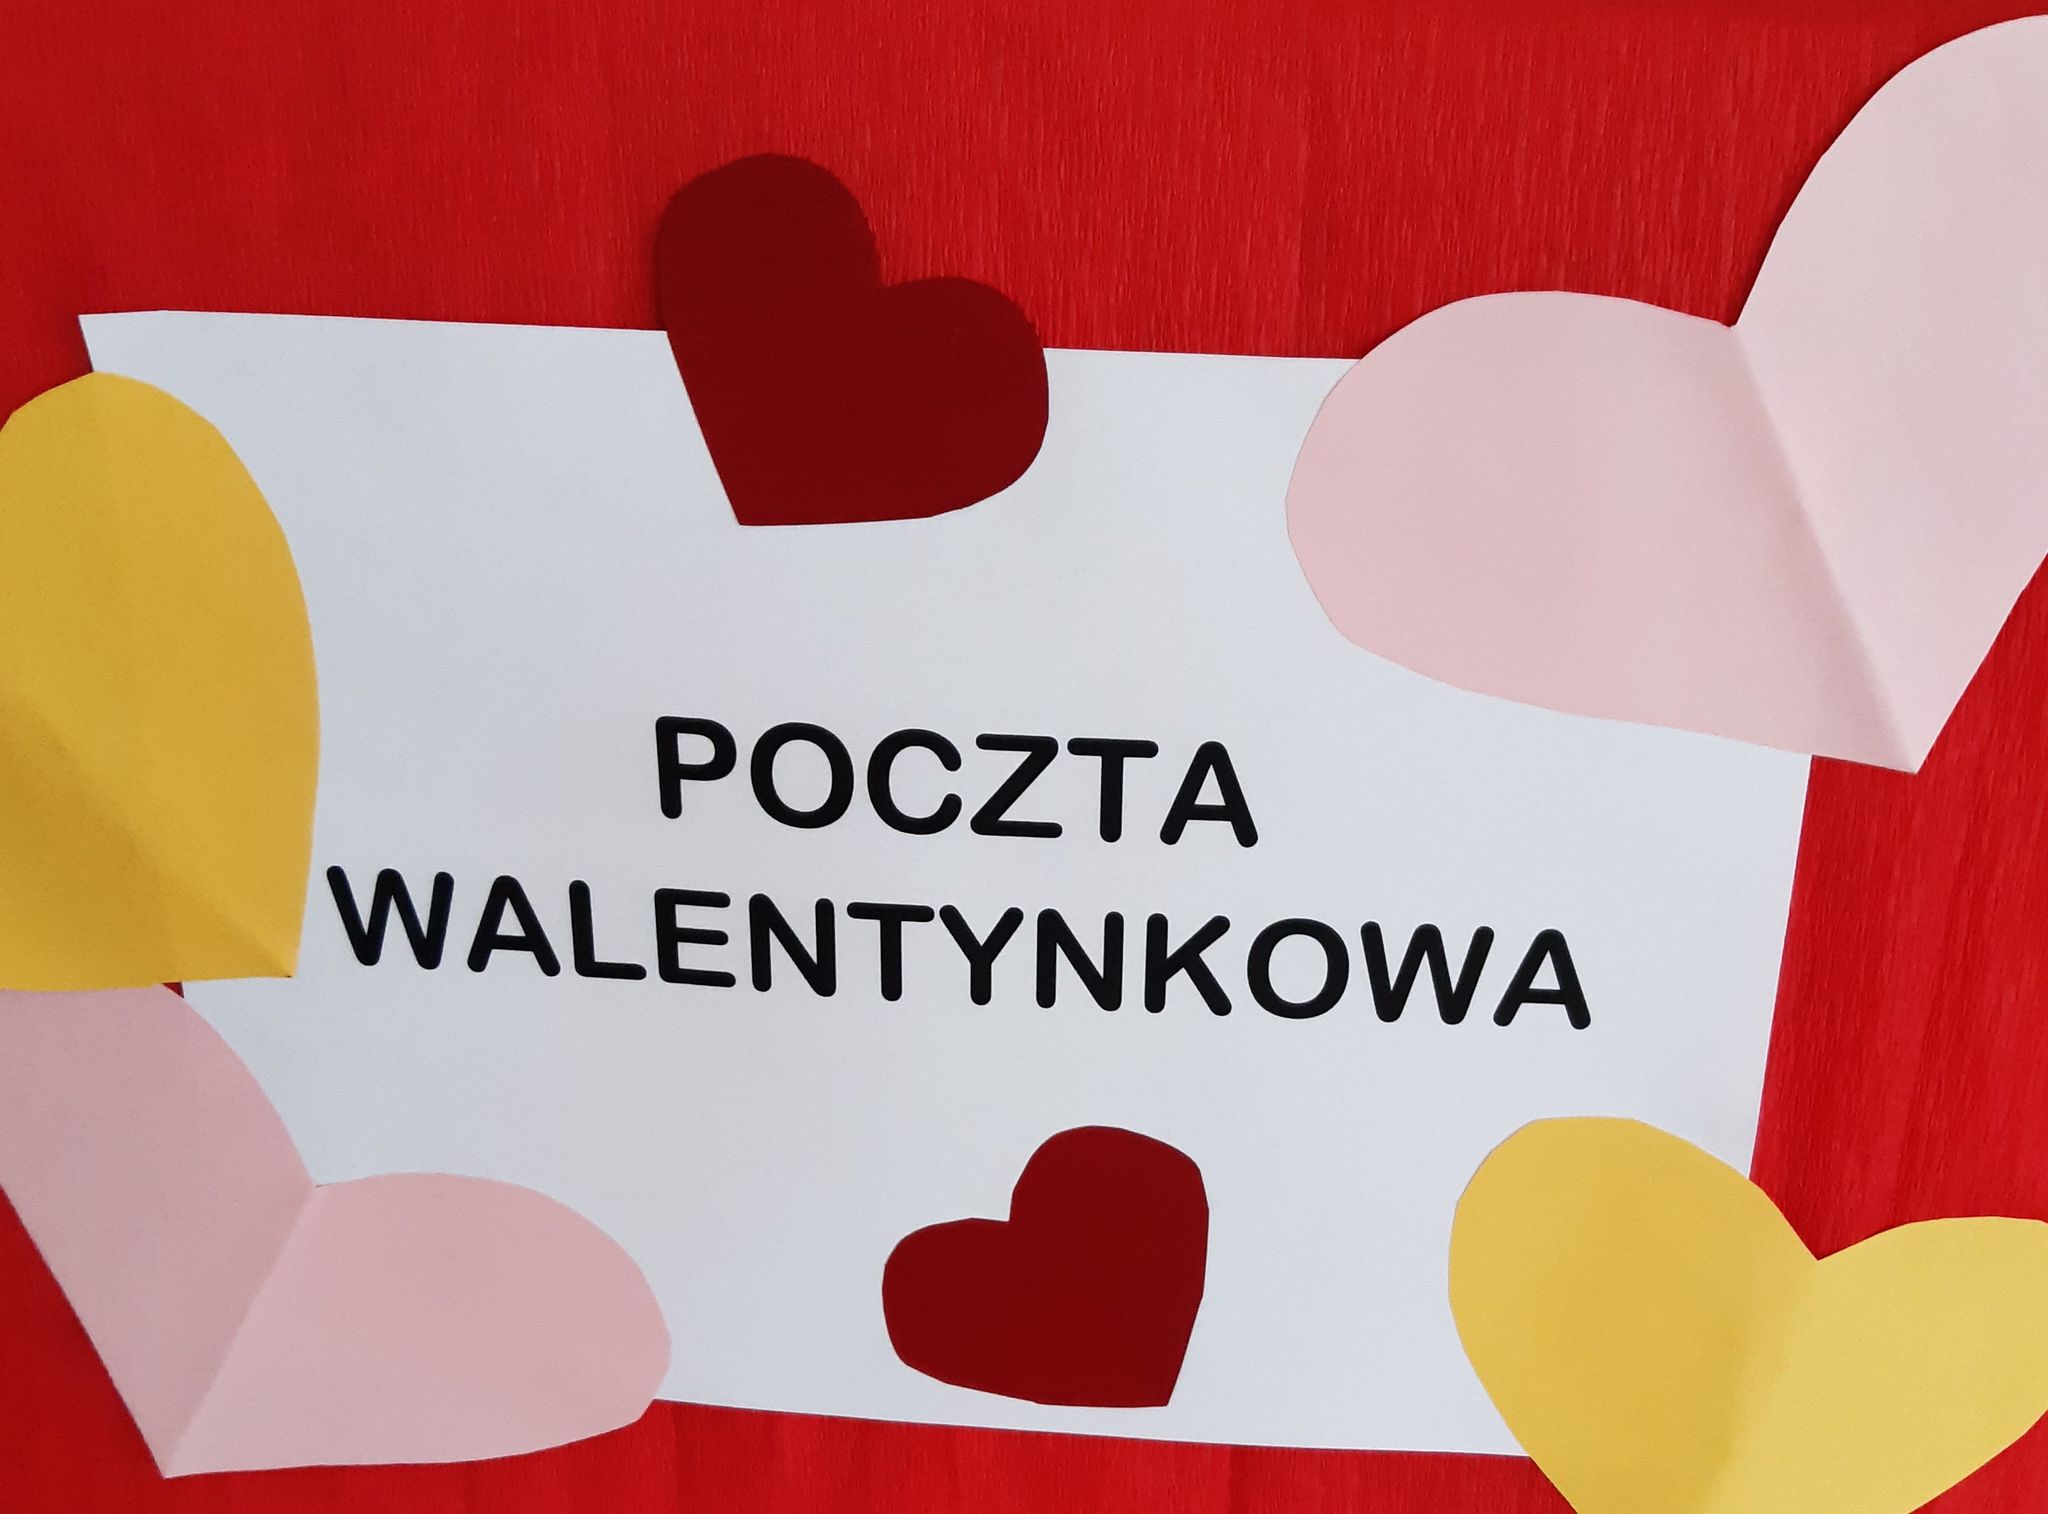 Poczta walentynkowa - Szkoła Podstawowa nr 1 im. Janusza Korczaka w  Niemodlinie